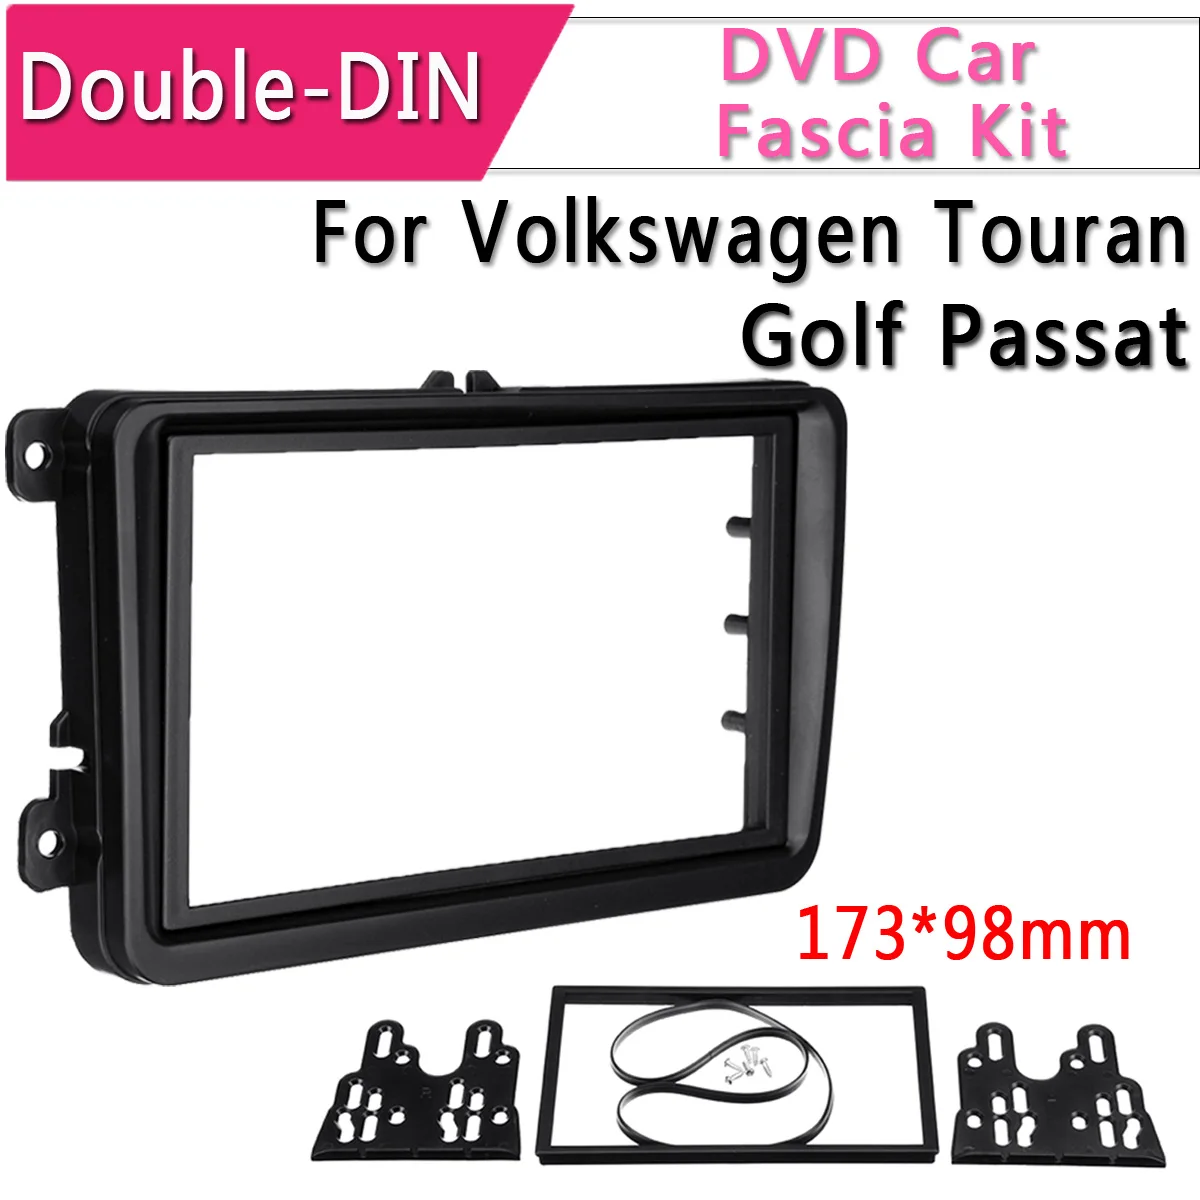 DVD Радио лицевая рамка отделка Даш двойной DIN аудио фасции панель отделка комплект автомобиля для VW для Touran для гольфа для Passat Caddy 2005-2012 - Название цвета: 173x98mm